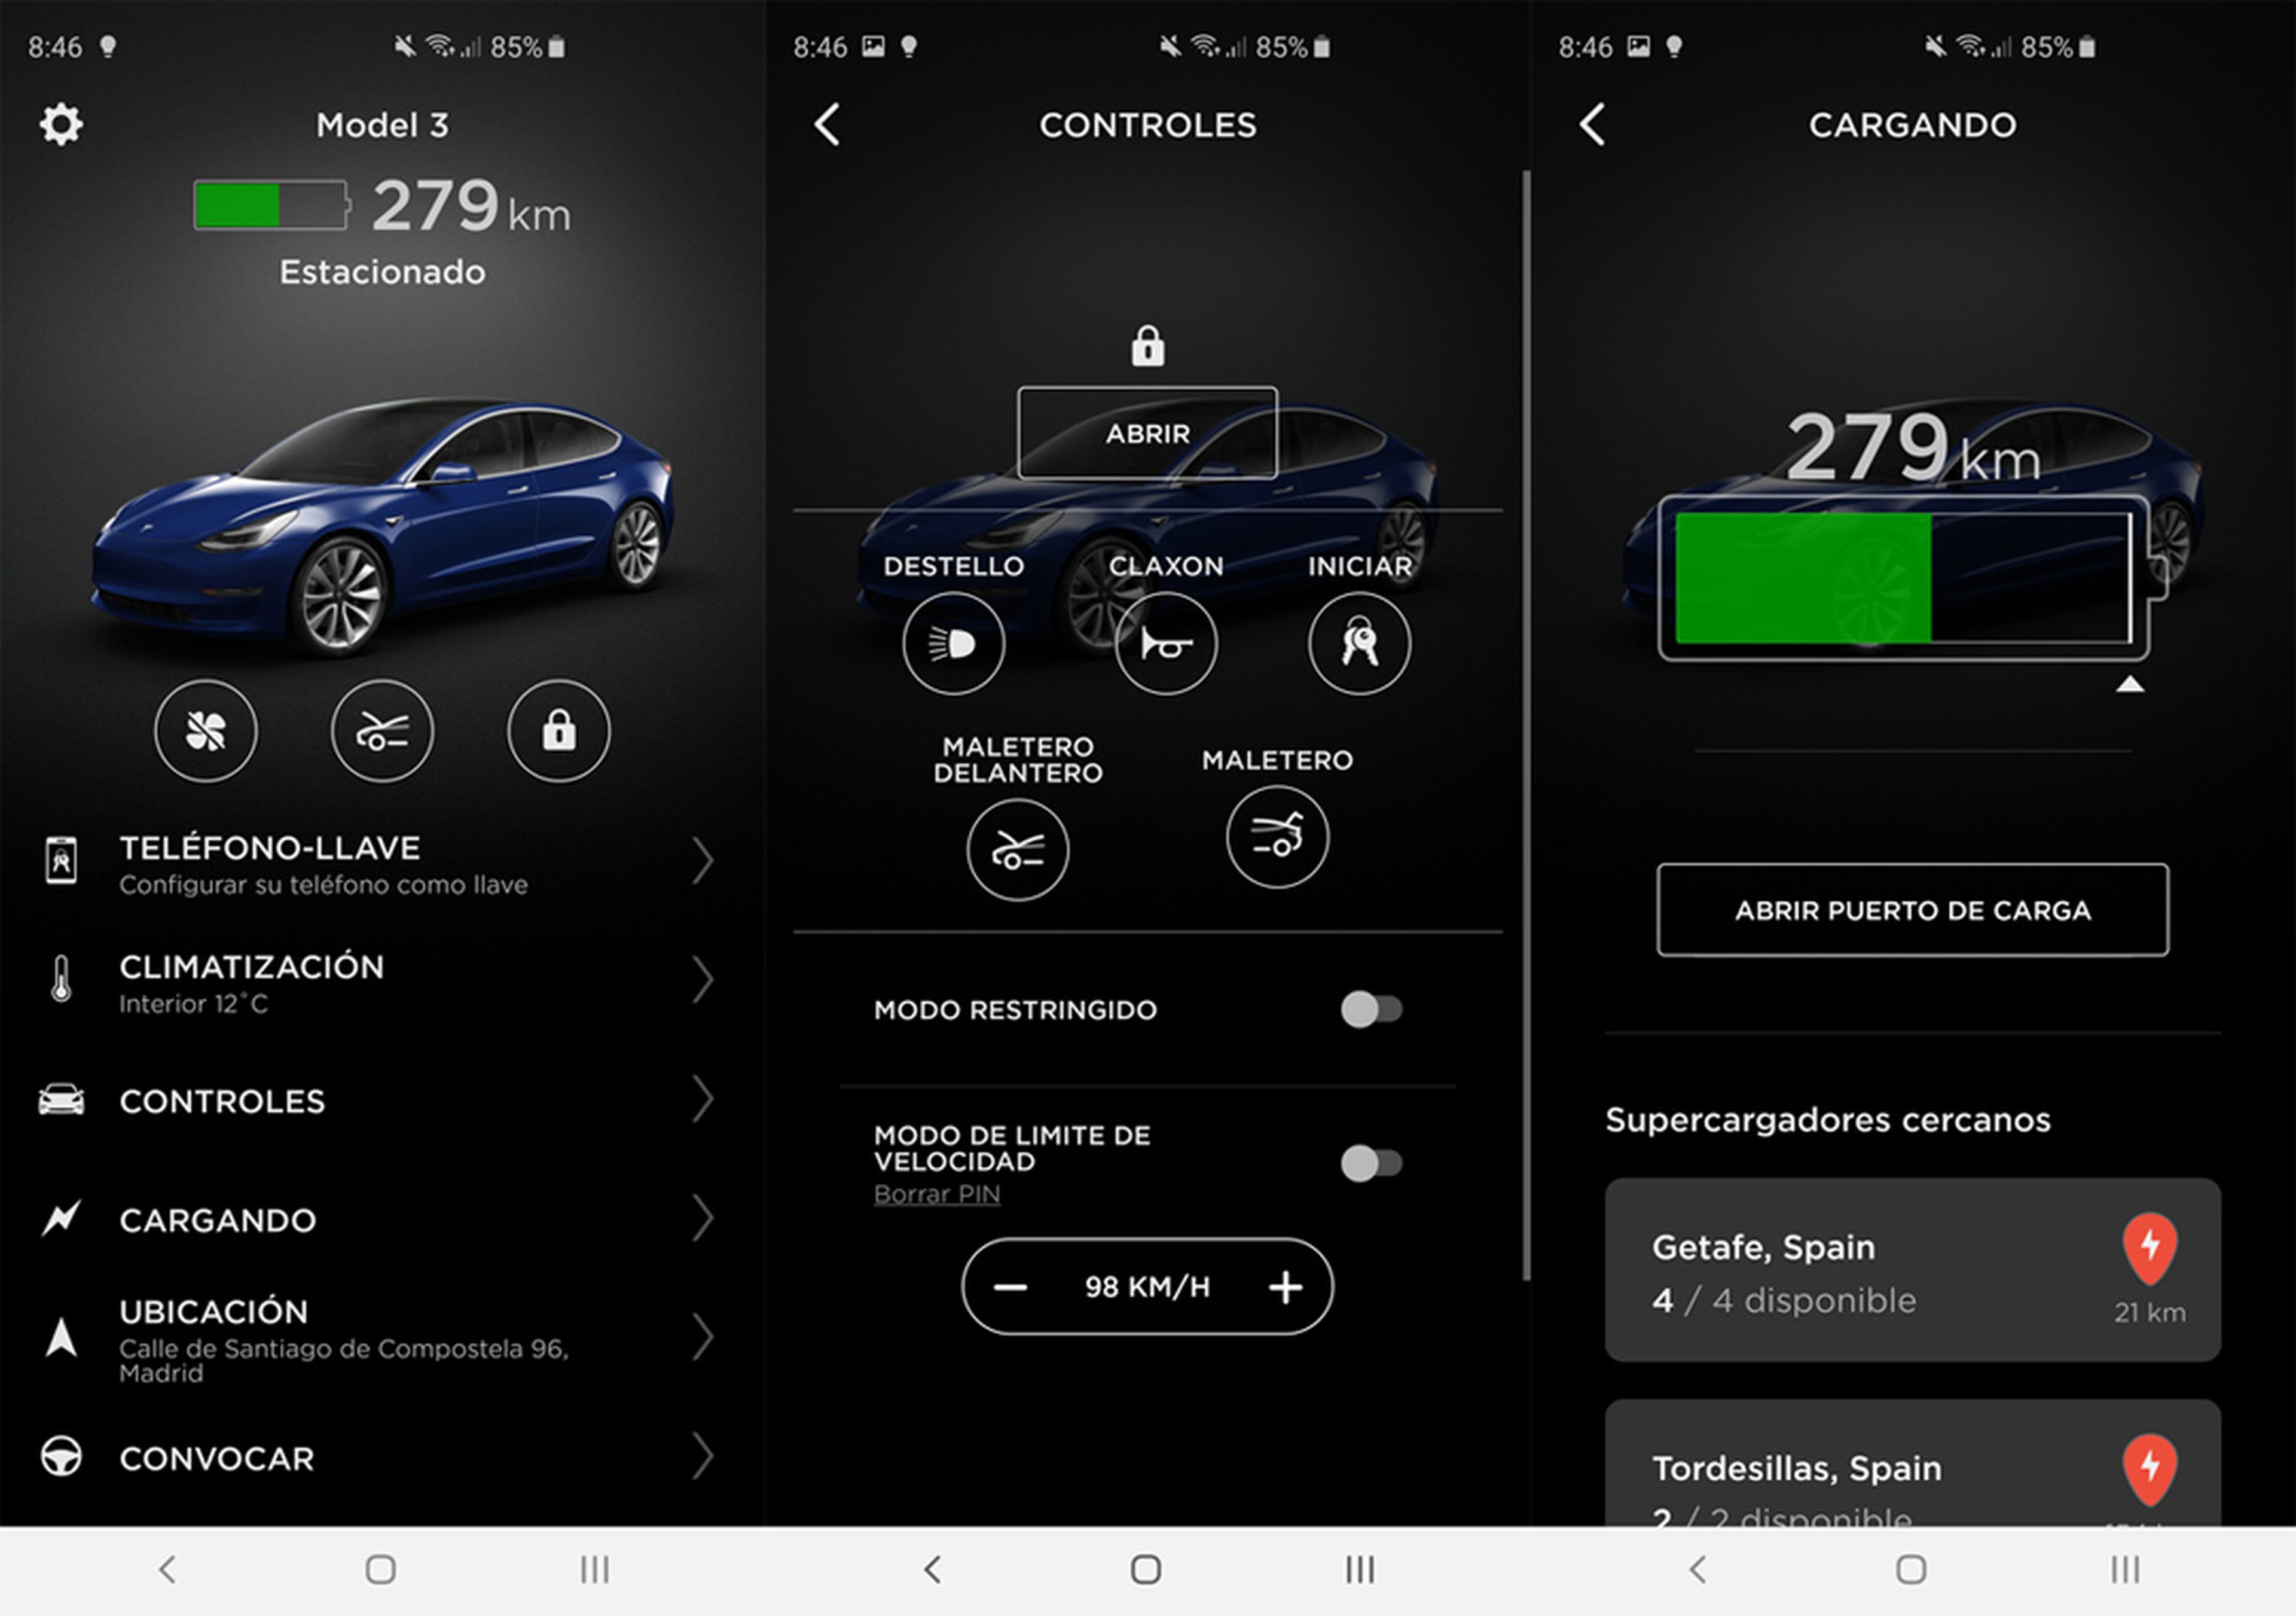 Además de permitir abrir y cerrar el coche (e incluso arrancarlo), la aplicación de Tesla muestra información de la batería, permite controlar el climatizador y también tiene una opción para mover el coche a distancia